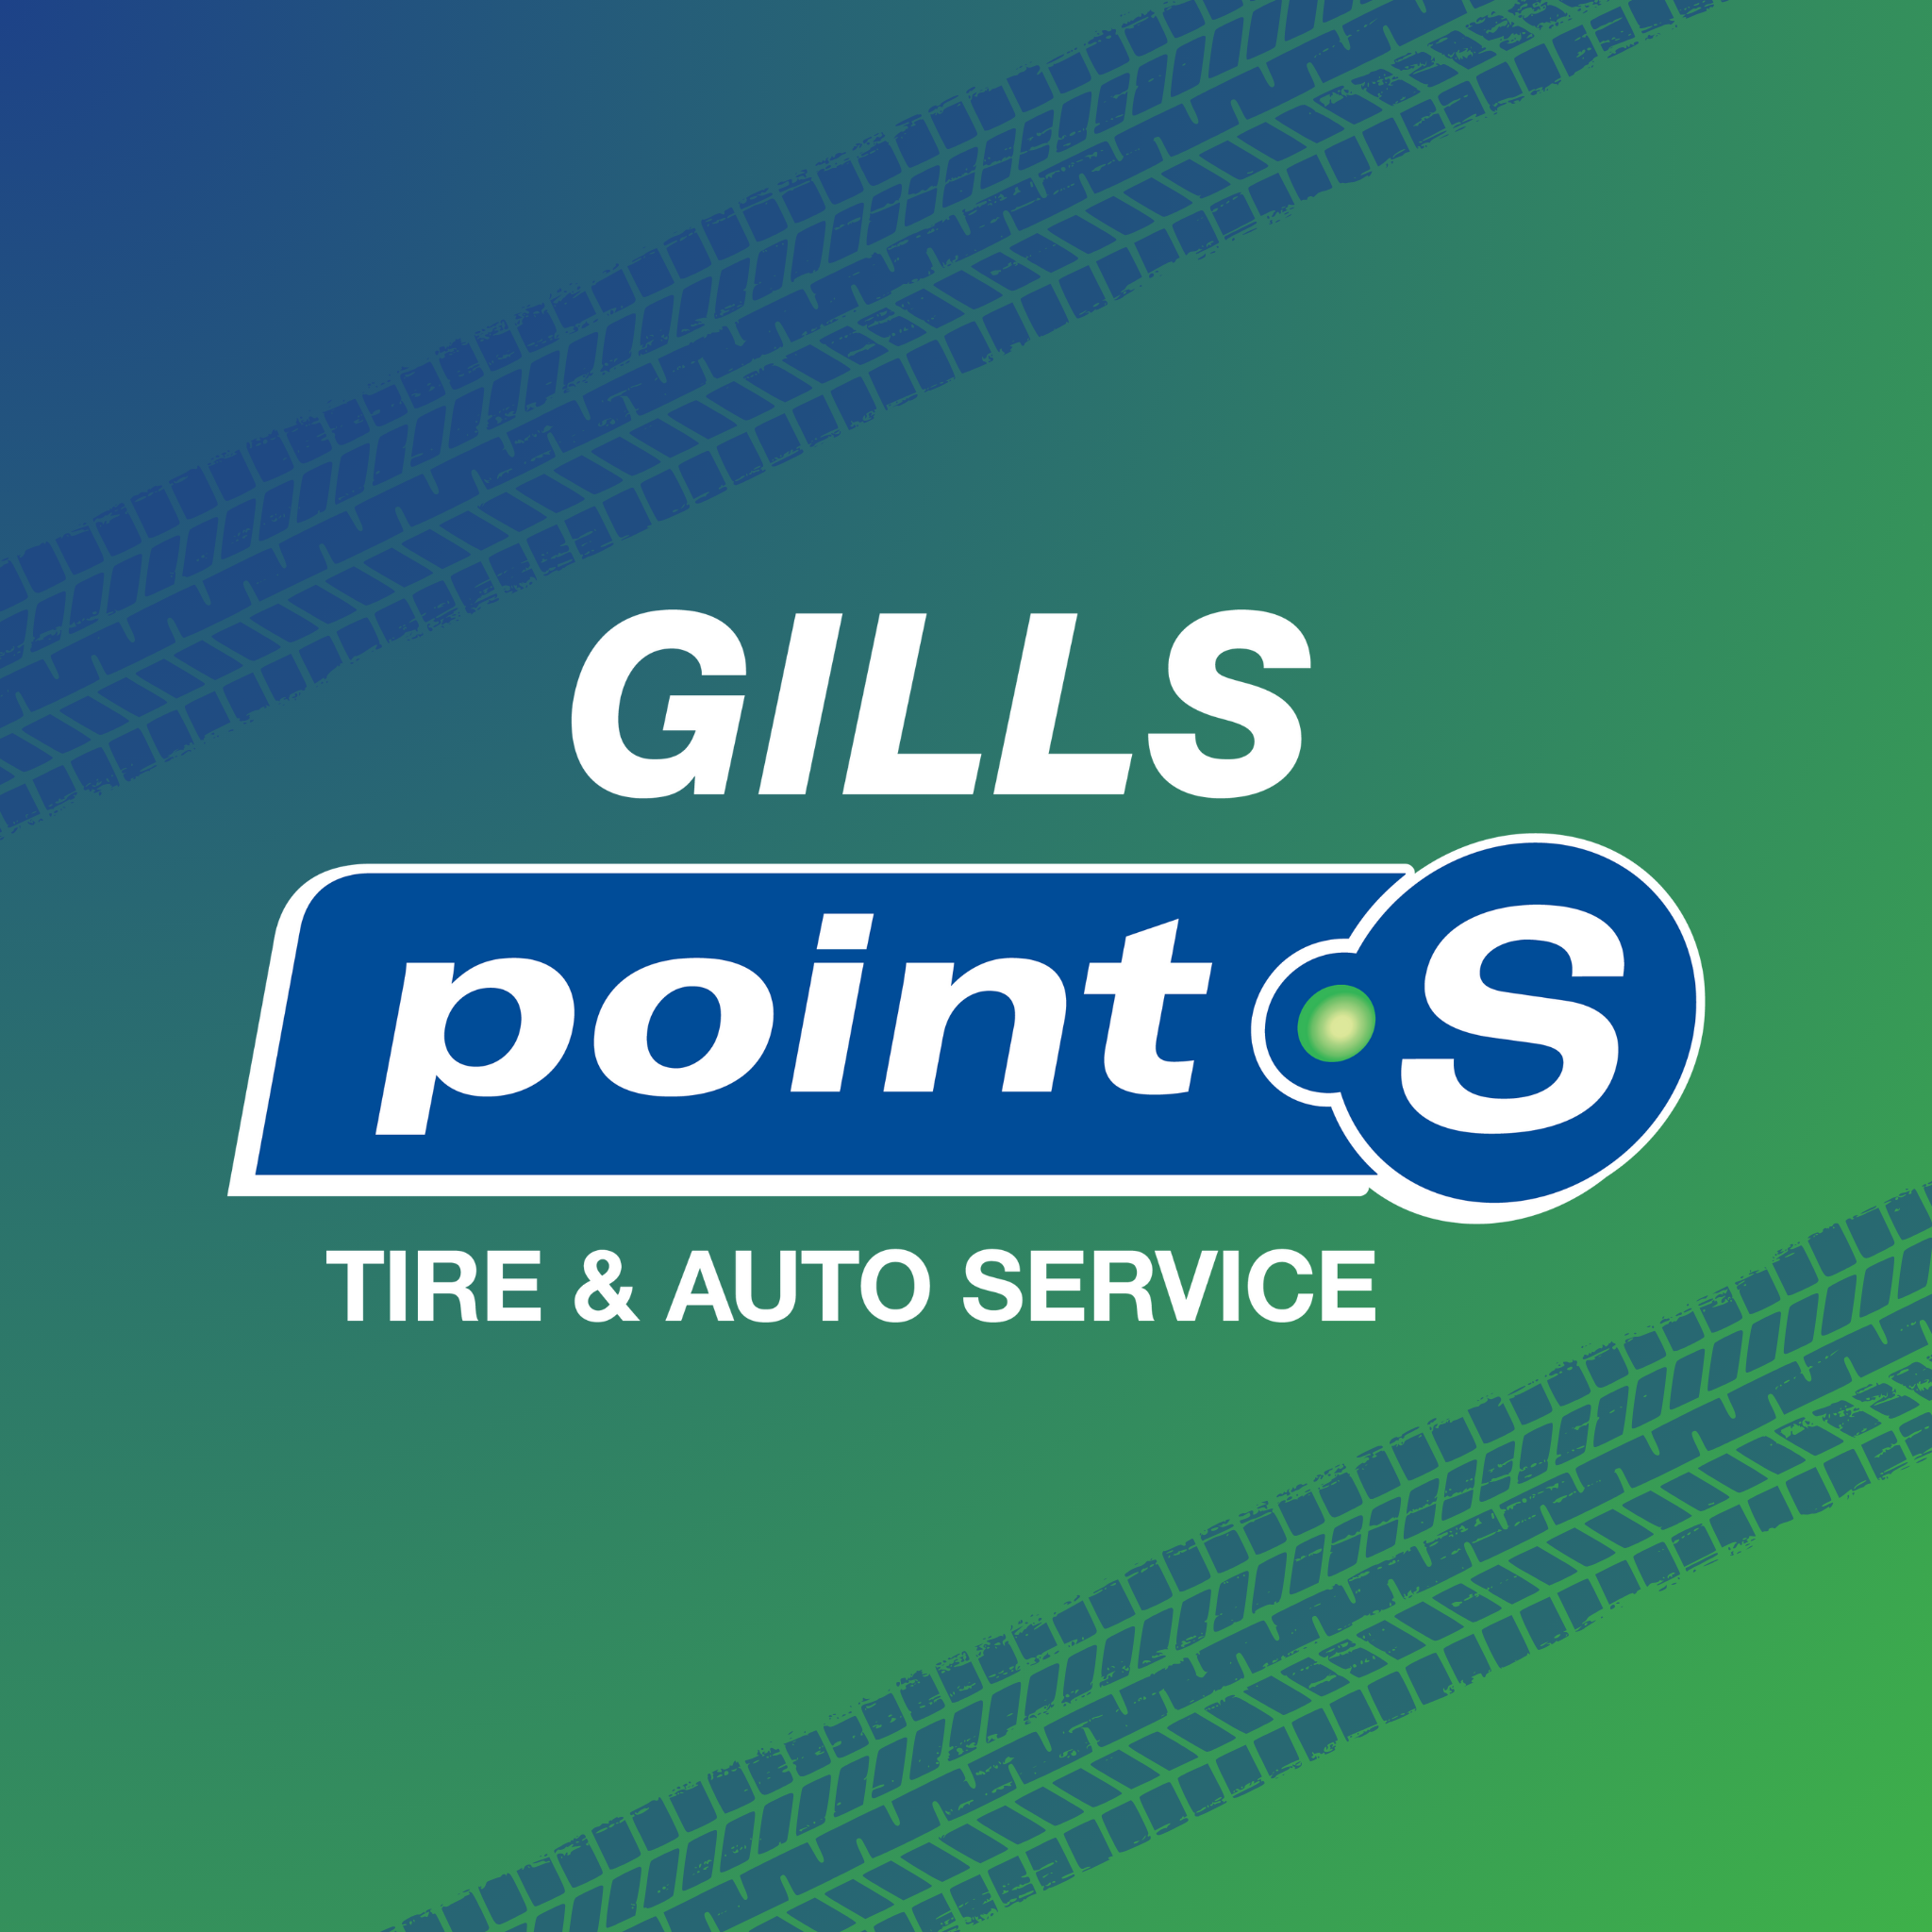 Gills Point S Tire & Auto - St. Johnsbury